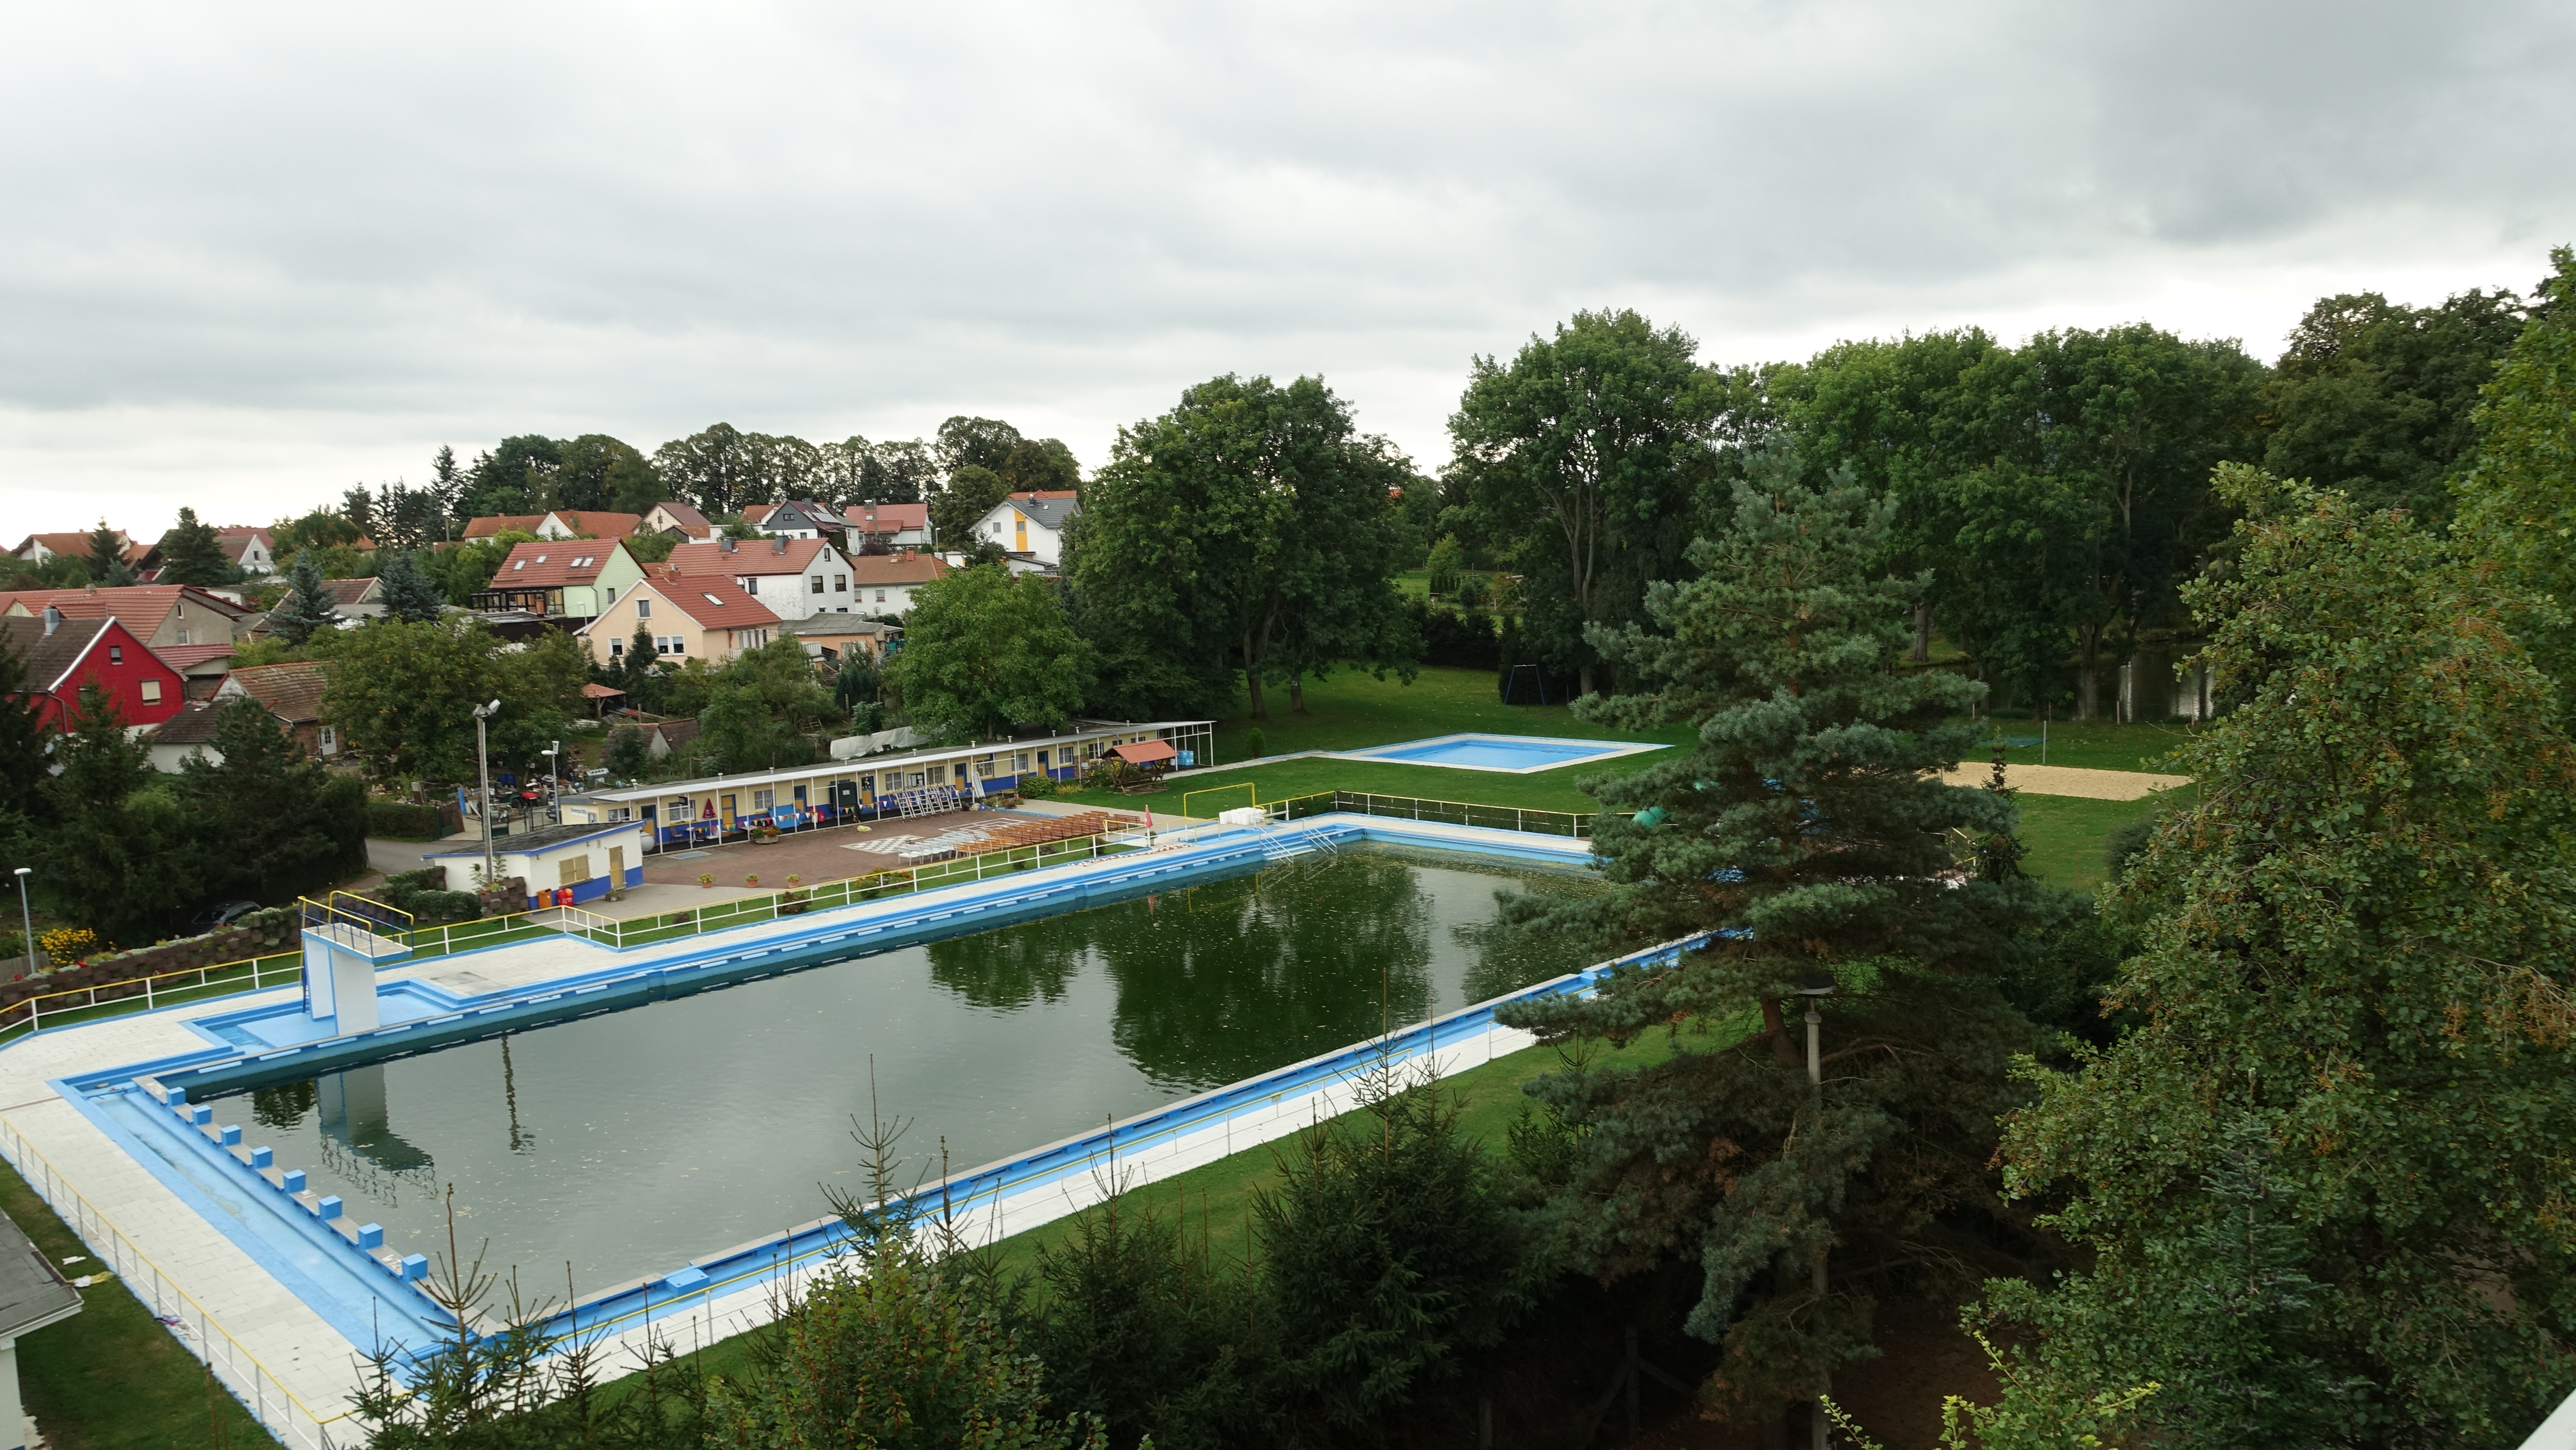 Das Bild zeigt ein Freibad von oben. Das Wasser im Schwimmerbecken ist dunkelgrün. Rundherum befinden sich Liegewiesen, ein Kinderbecken und ein Beachvolleyballplatz.